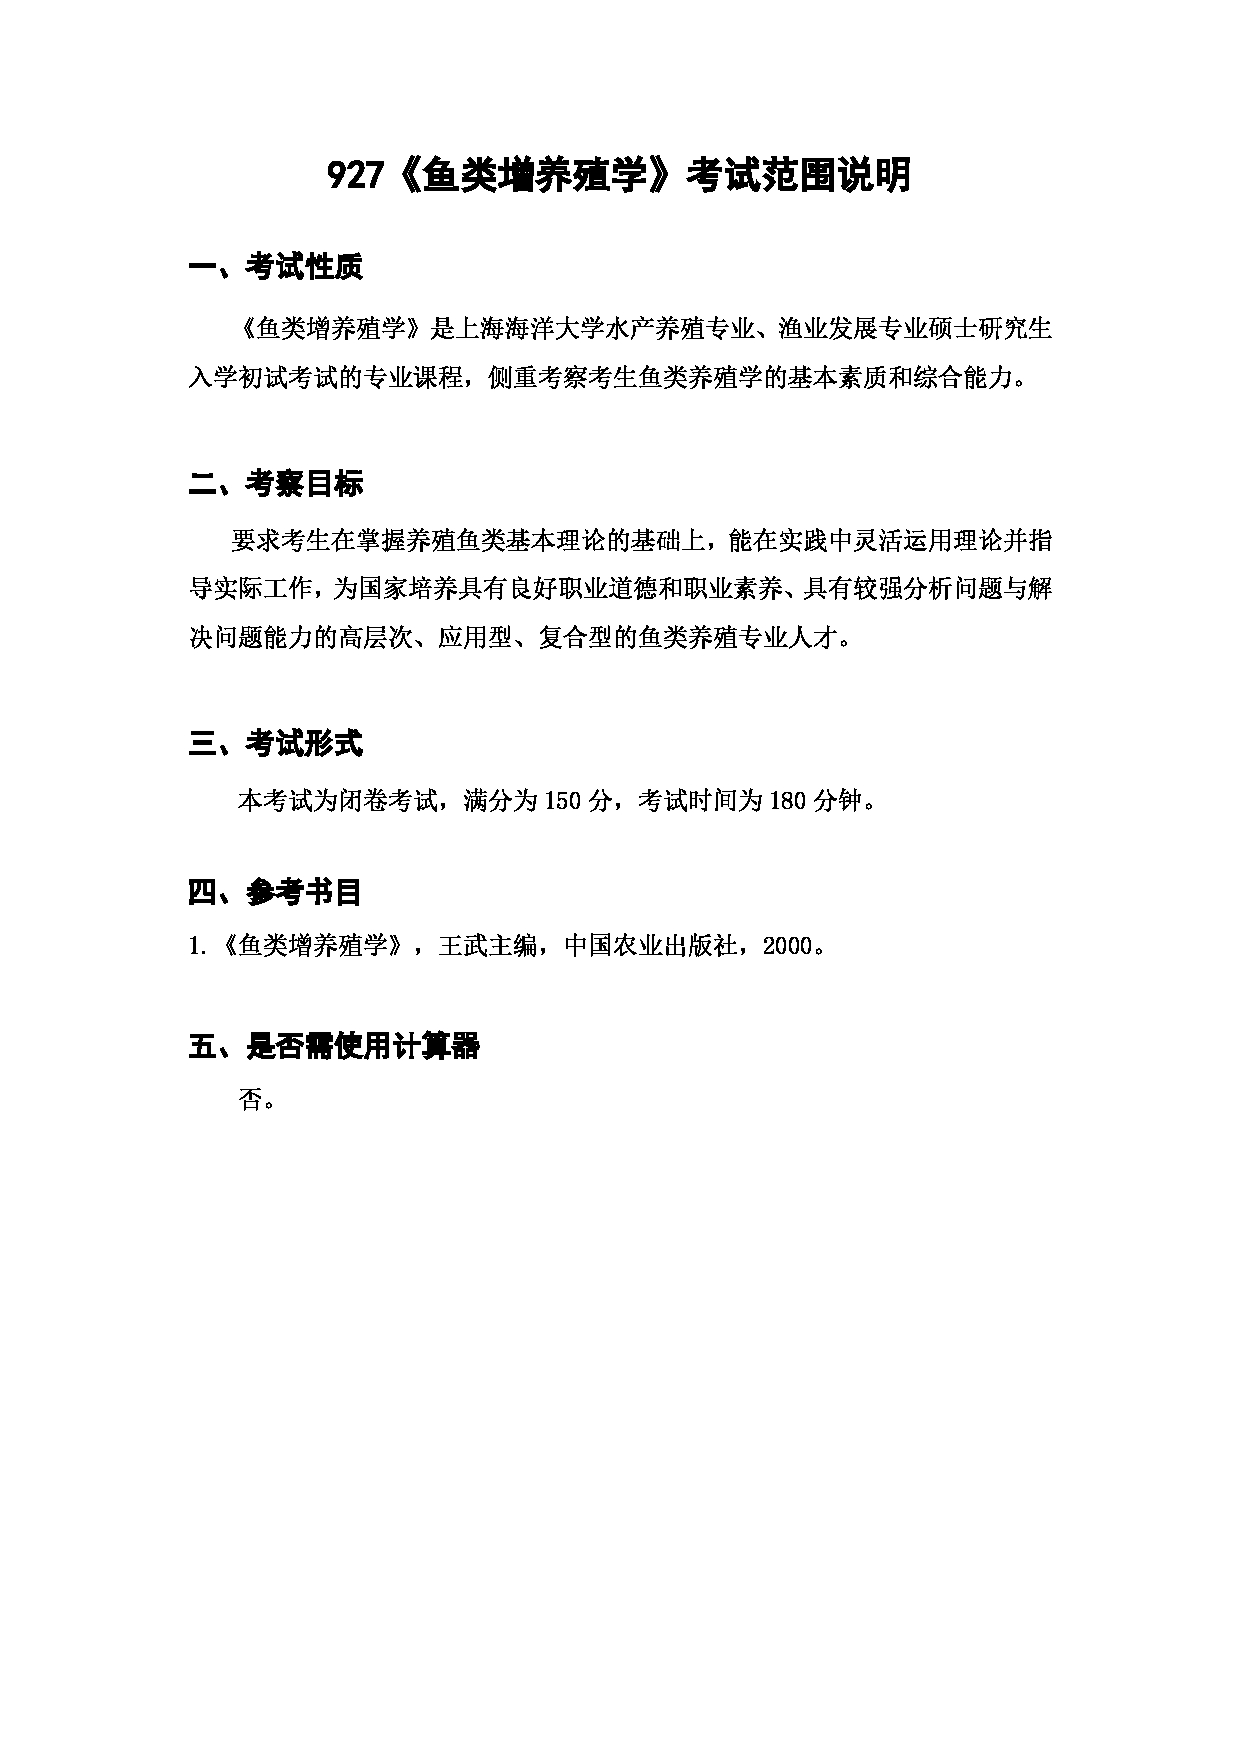 上海海洋大学2023年考研自命题科目 927《鱼类增养殖学》 考试范围第1页